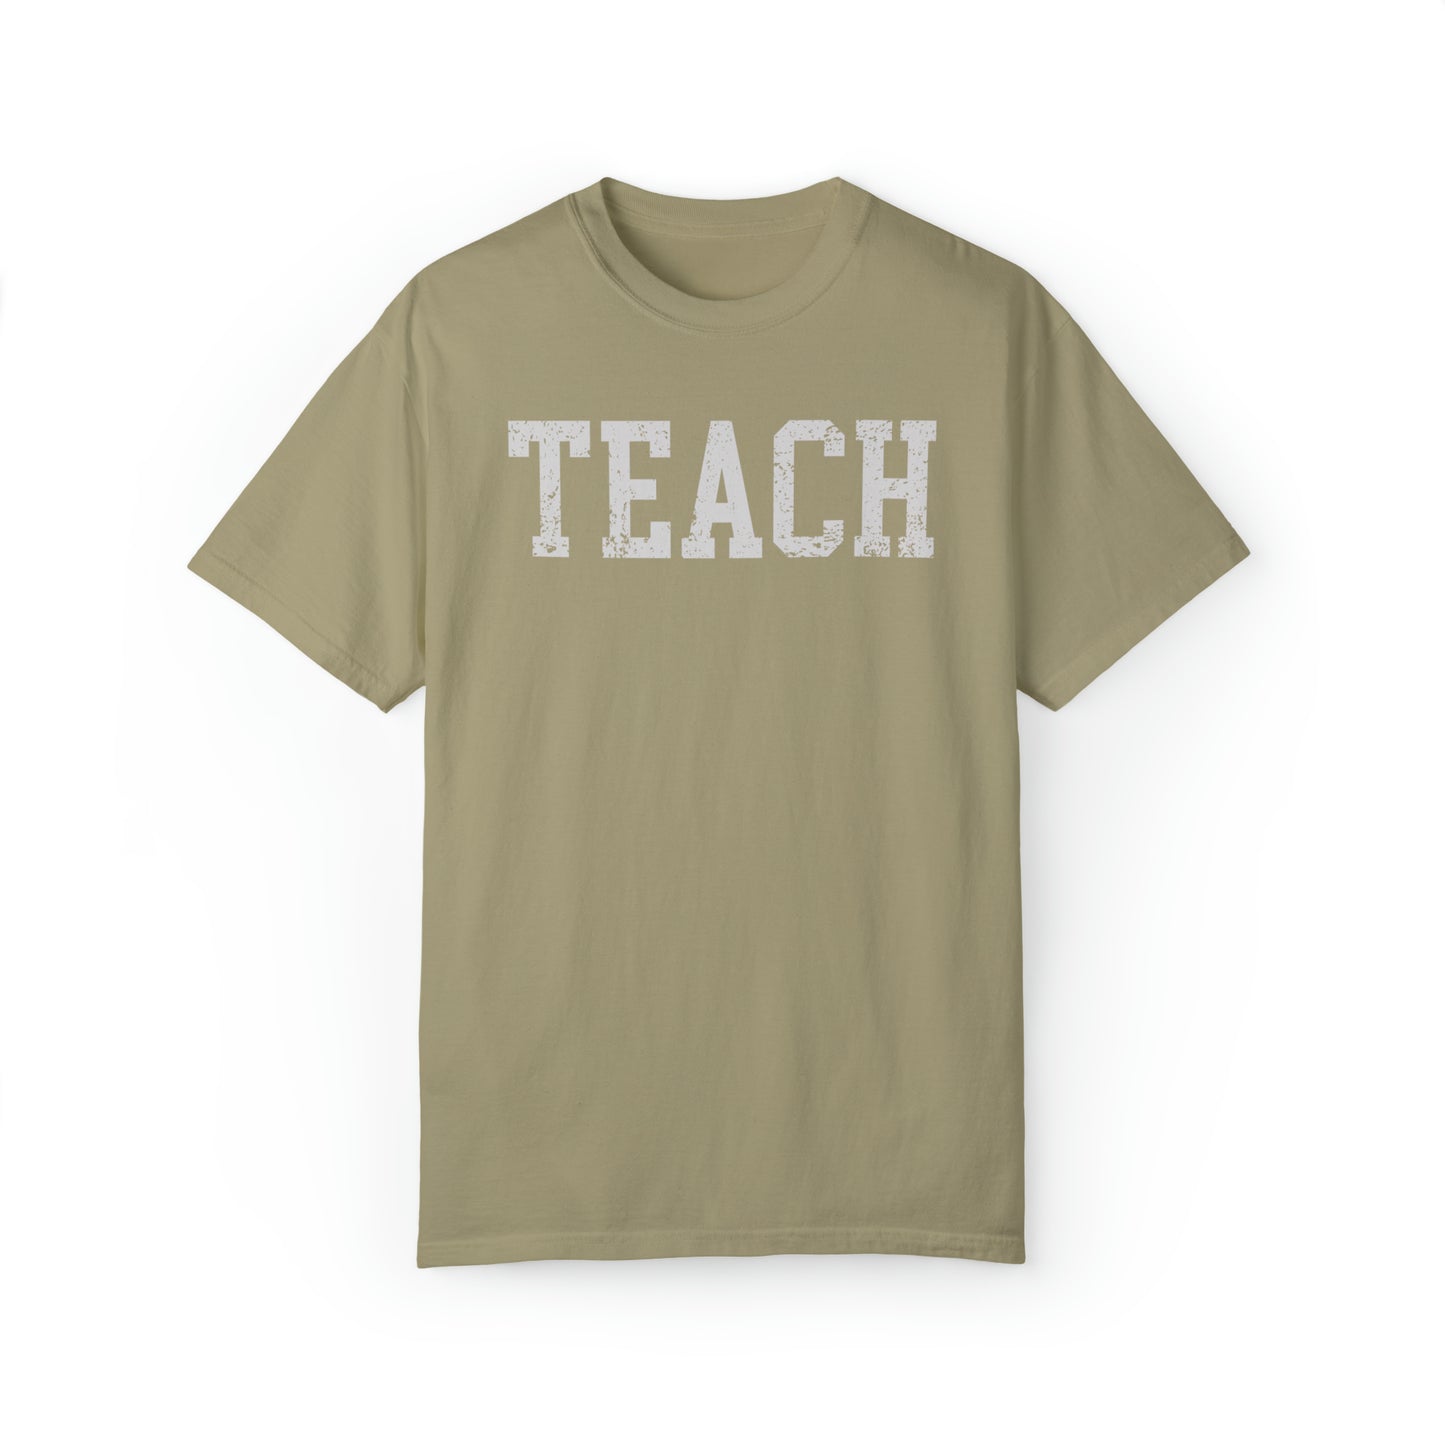 Teach Teacher Trendy Graphic T-Shirt, Back to School Shirt, School Instructor Teacher Shirt, Elementary Middle High School Teach Gift